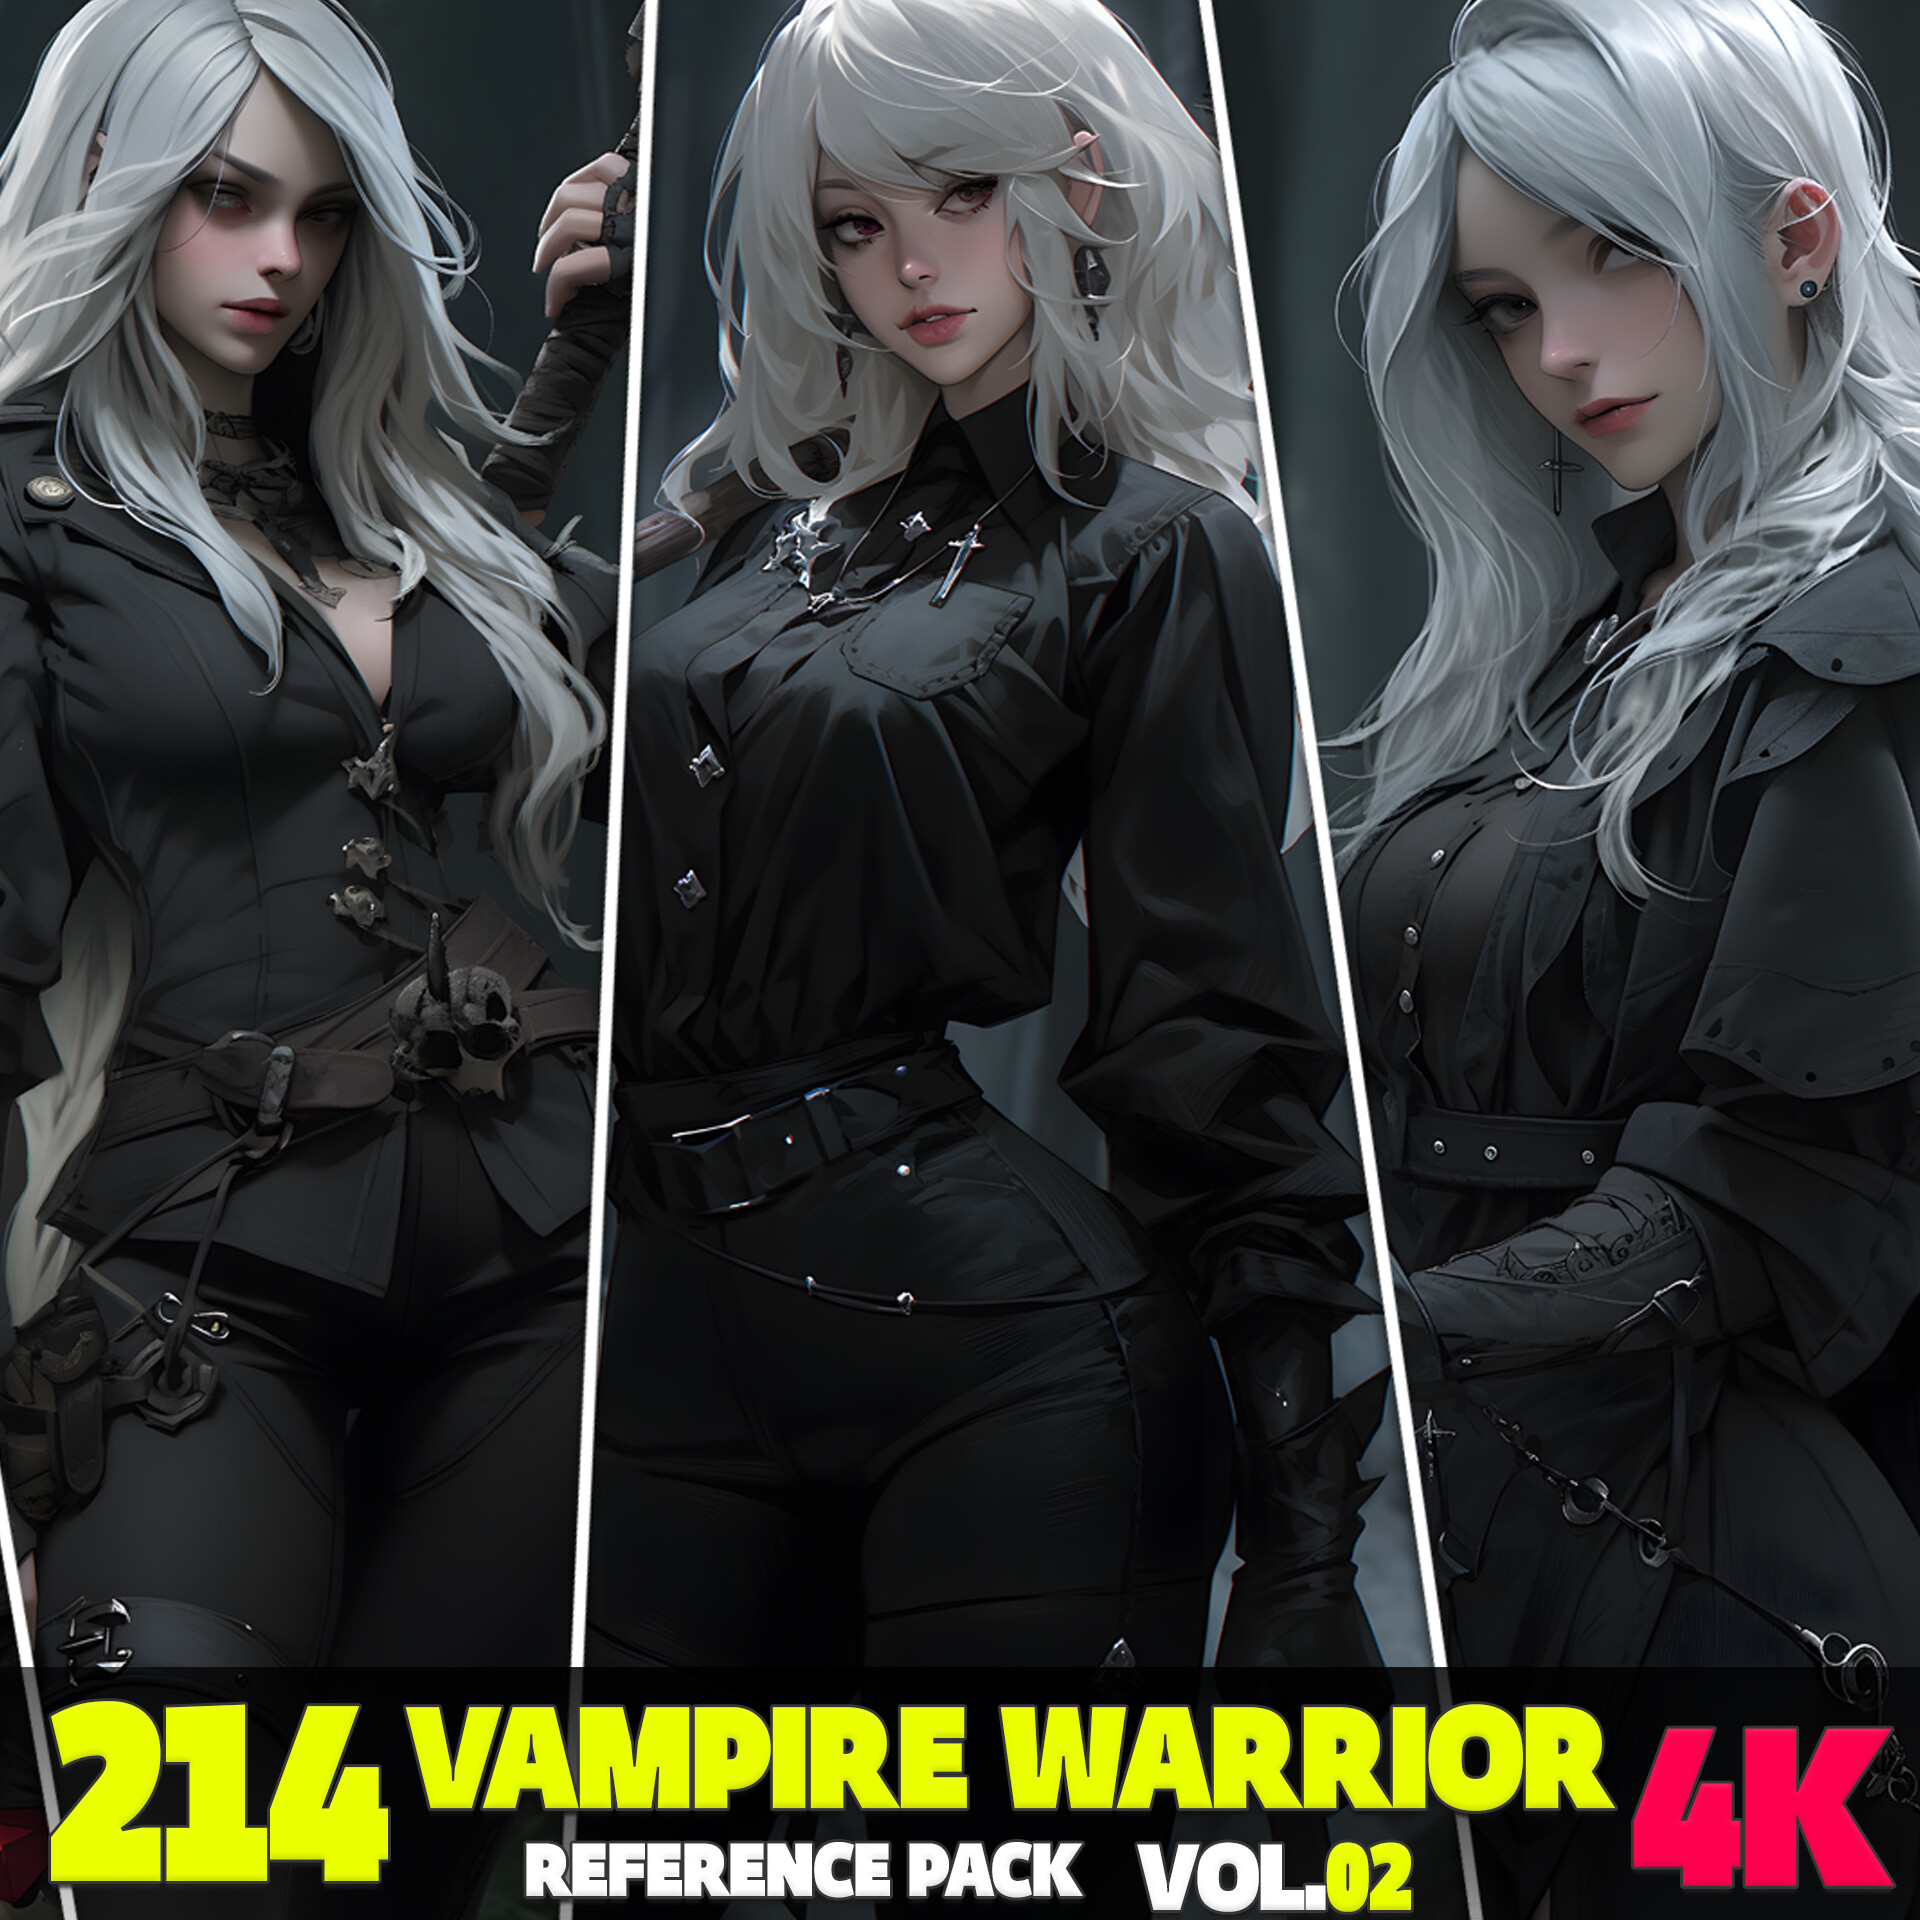 ArtStation - Vampire Anime Girl 4k wallpaper